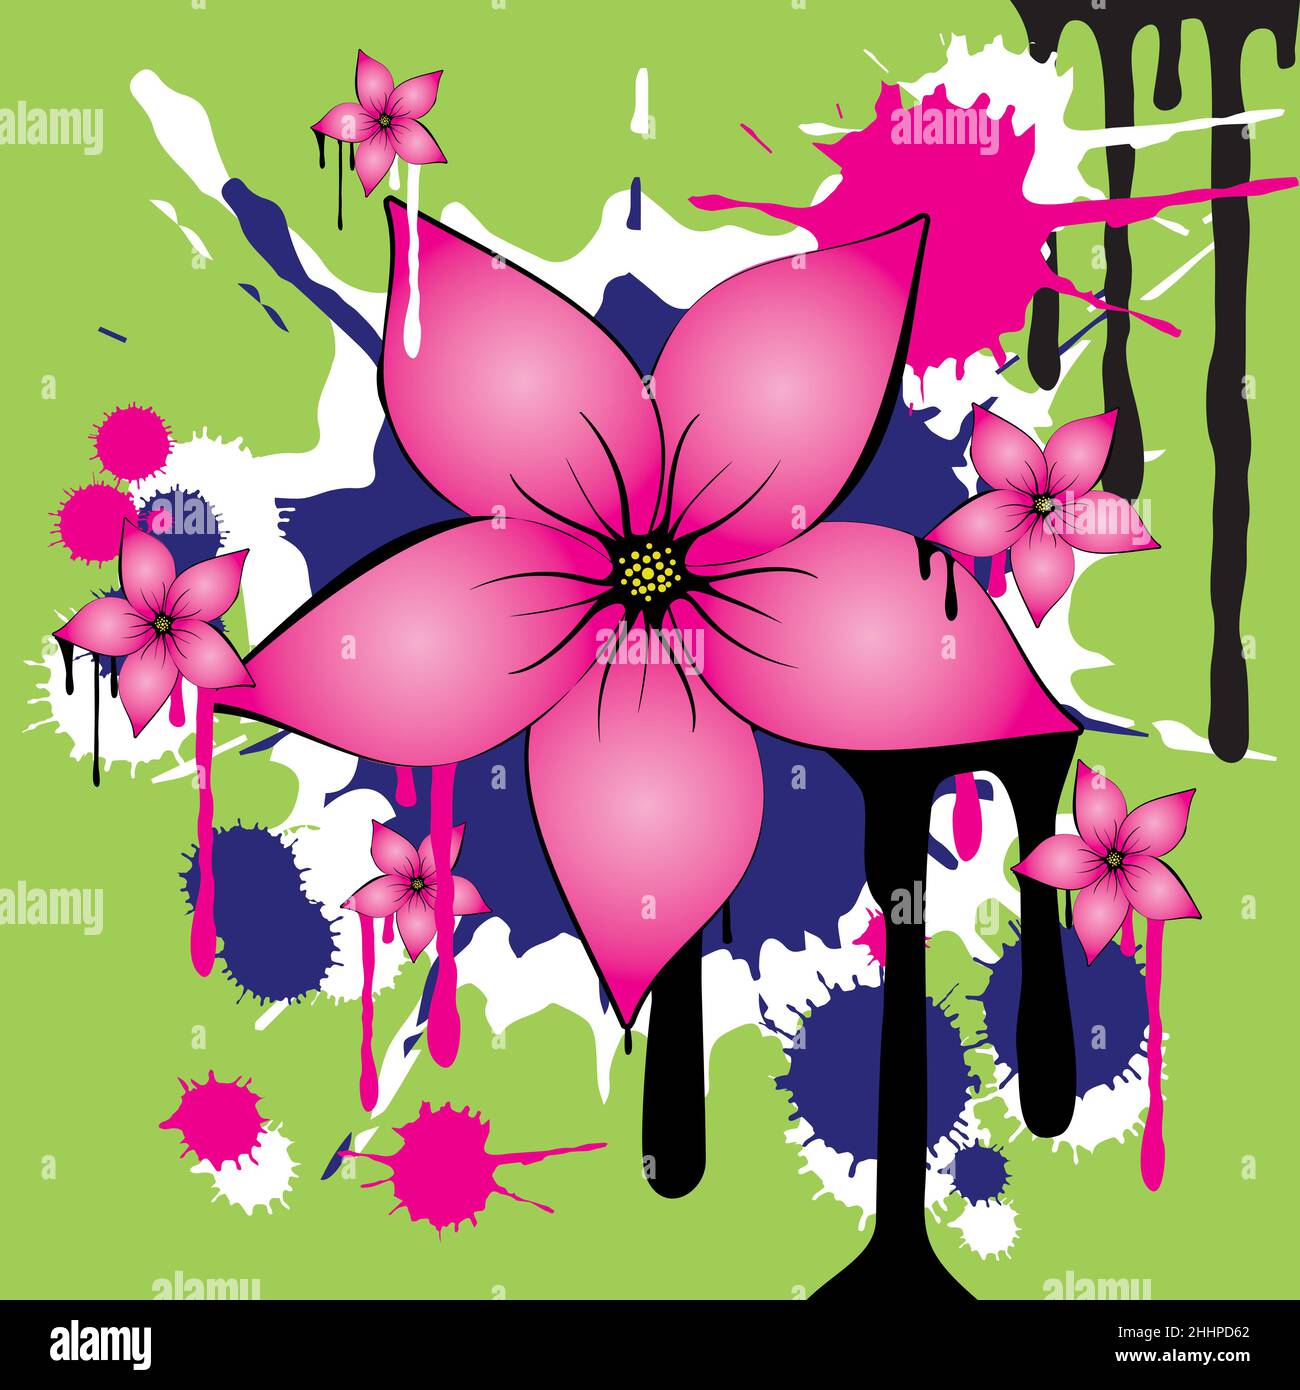 Una grunge decorativa y arte de graffiti de flores en el medio es una gran flor rosa con cinco pétalos. En la parte posterior hay manchas de tinta y goteos. Ilustración del Vector